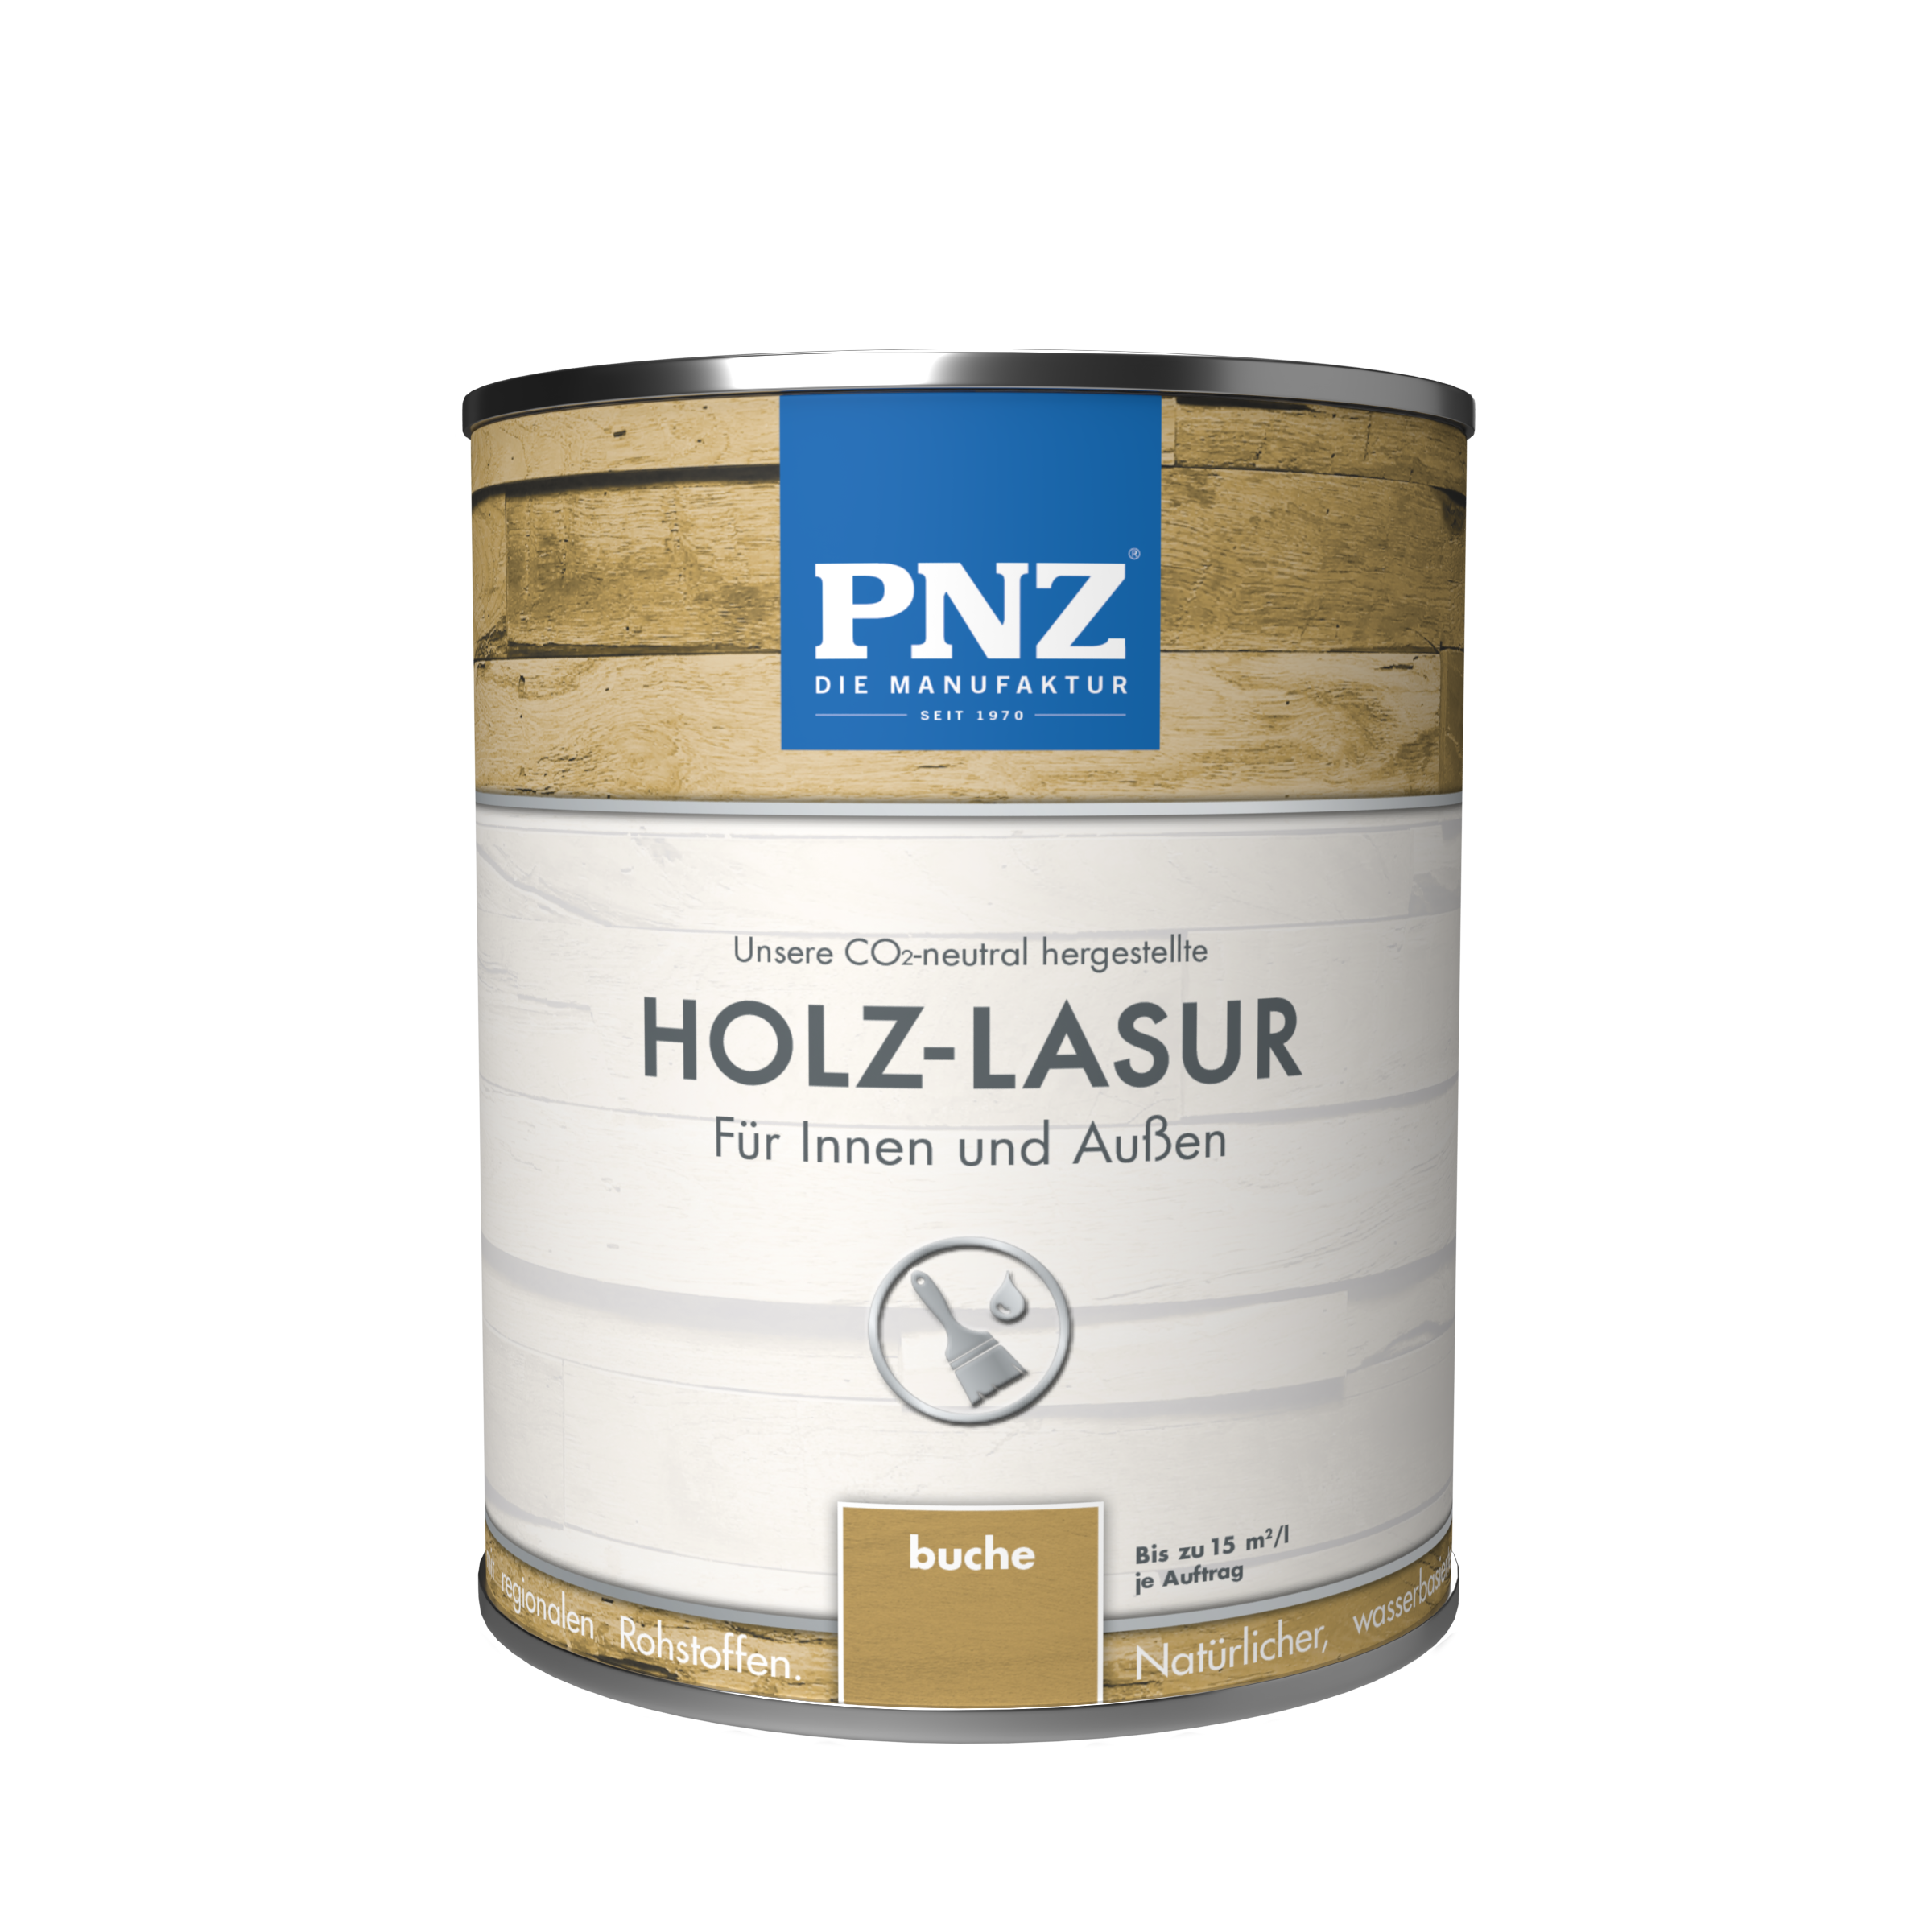 PNZ-1970_Holz-Lasur_buche